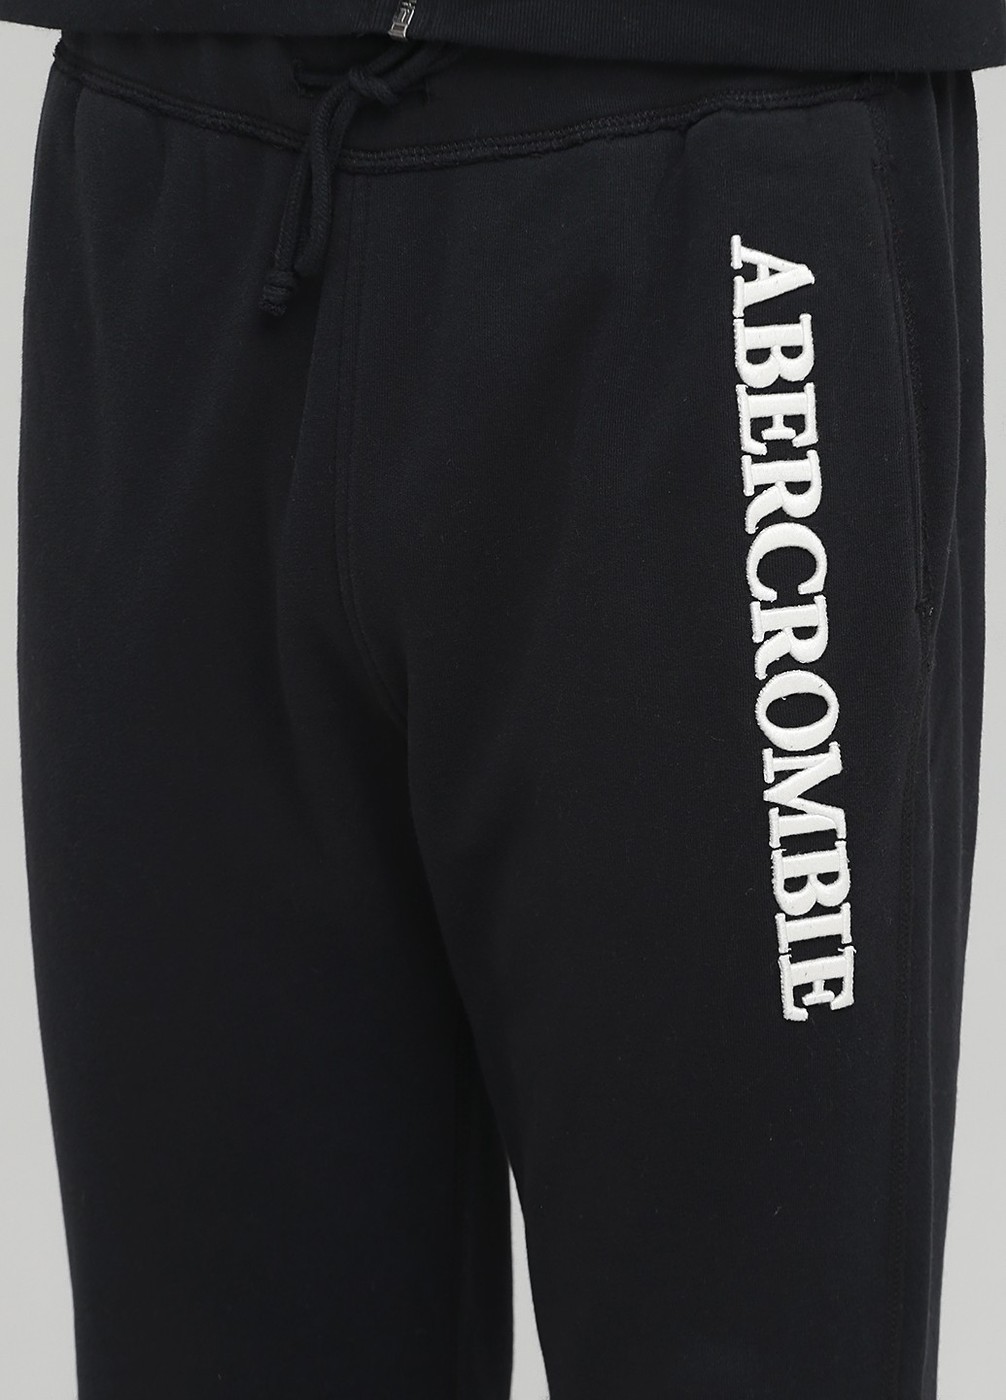 Спортивный костюм мужской - костюм спортивный Abercrombie & Fitch, XL, XL